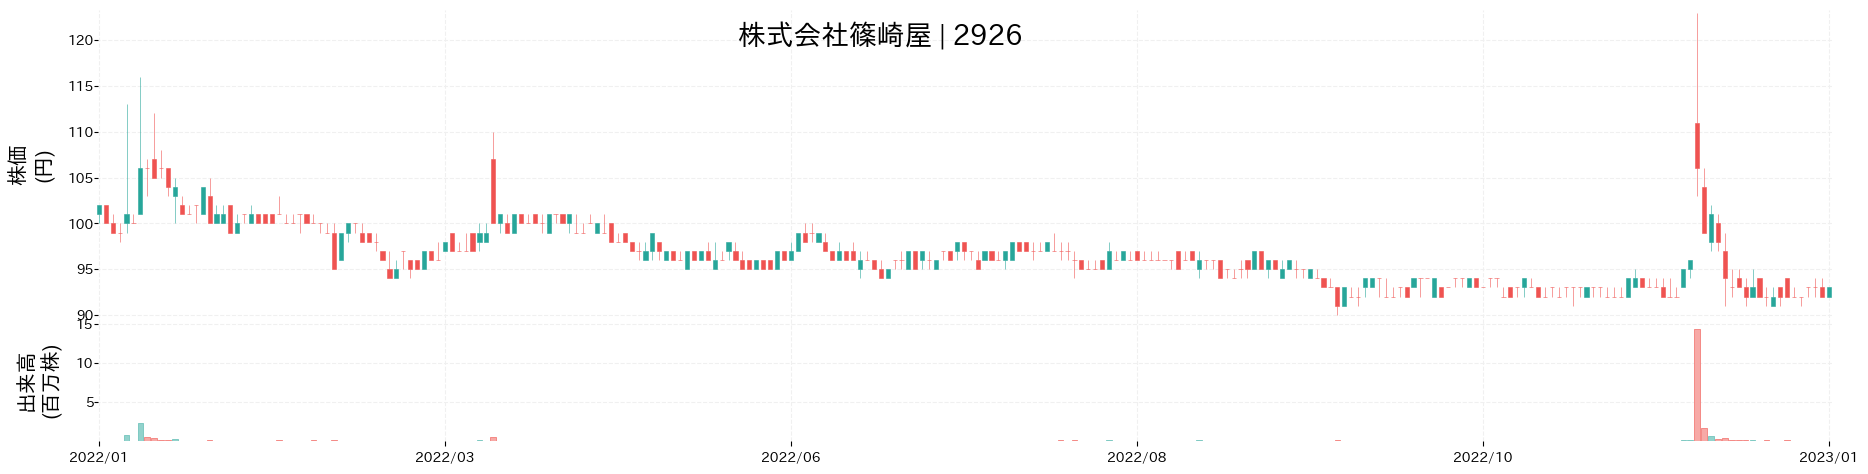 篠崎屋の株価推移(2022)